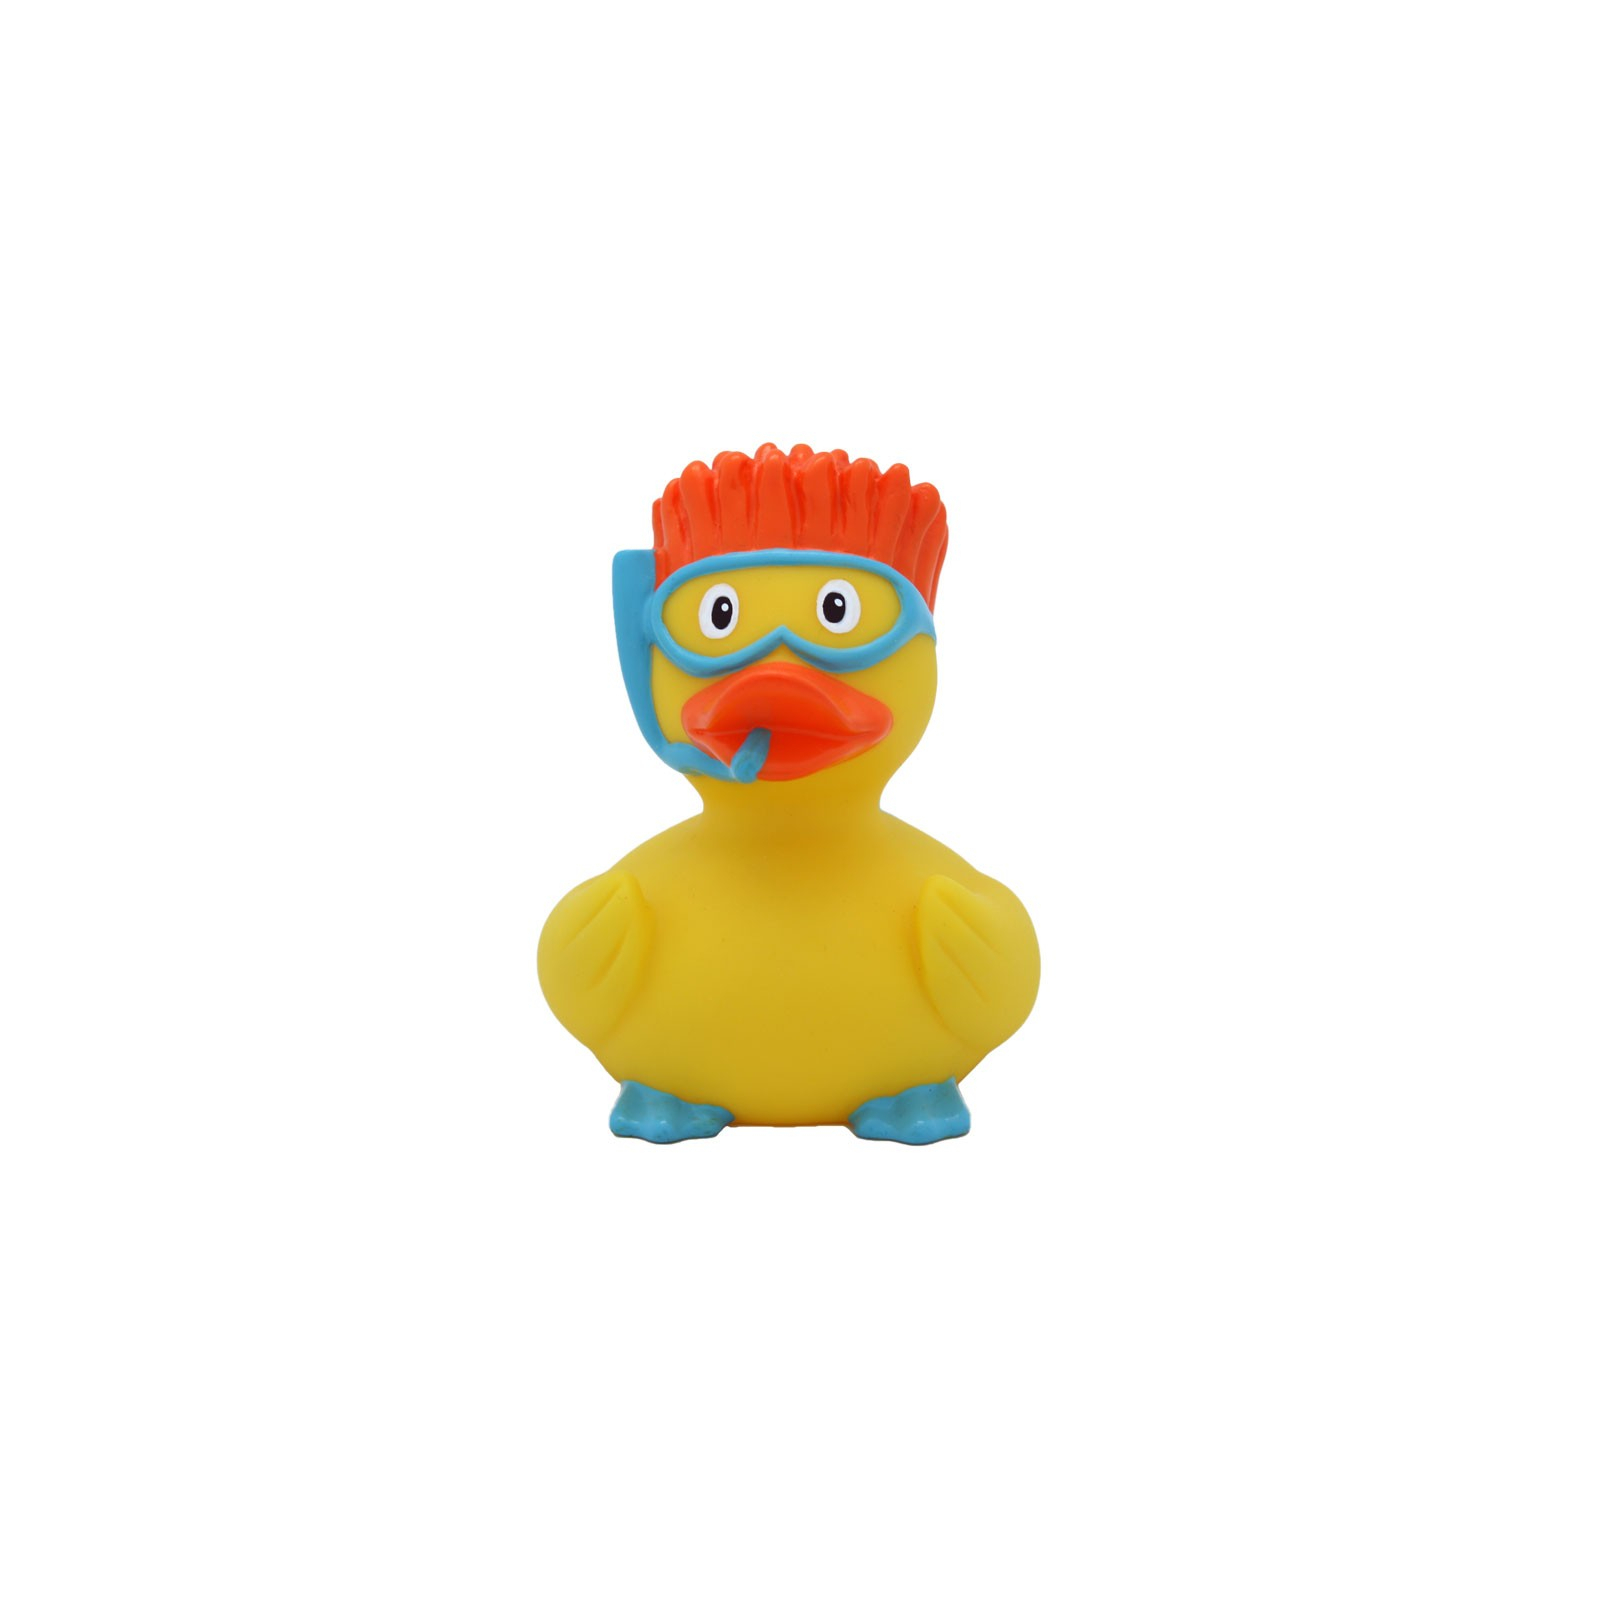 Іграшка для ванної Funny Ducks Аквалангистка утка (L1864) зображення 3